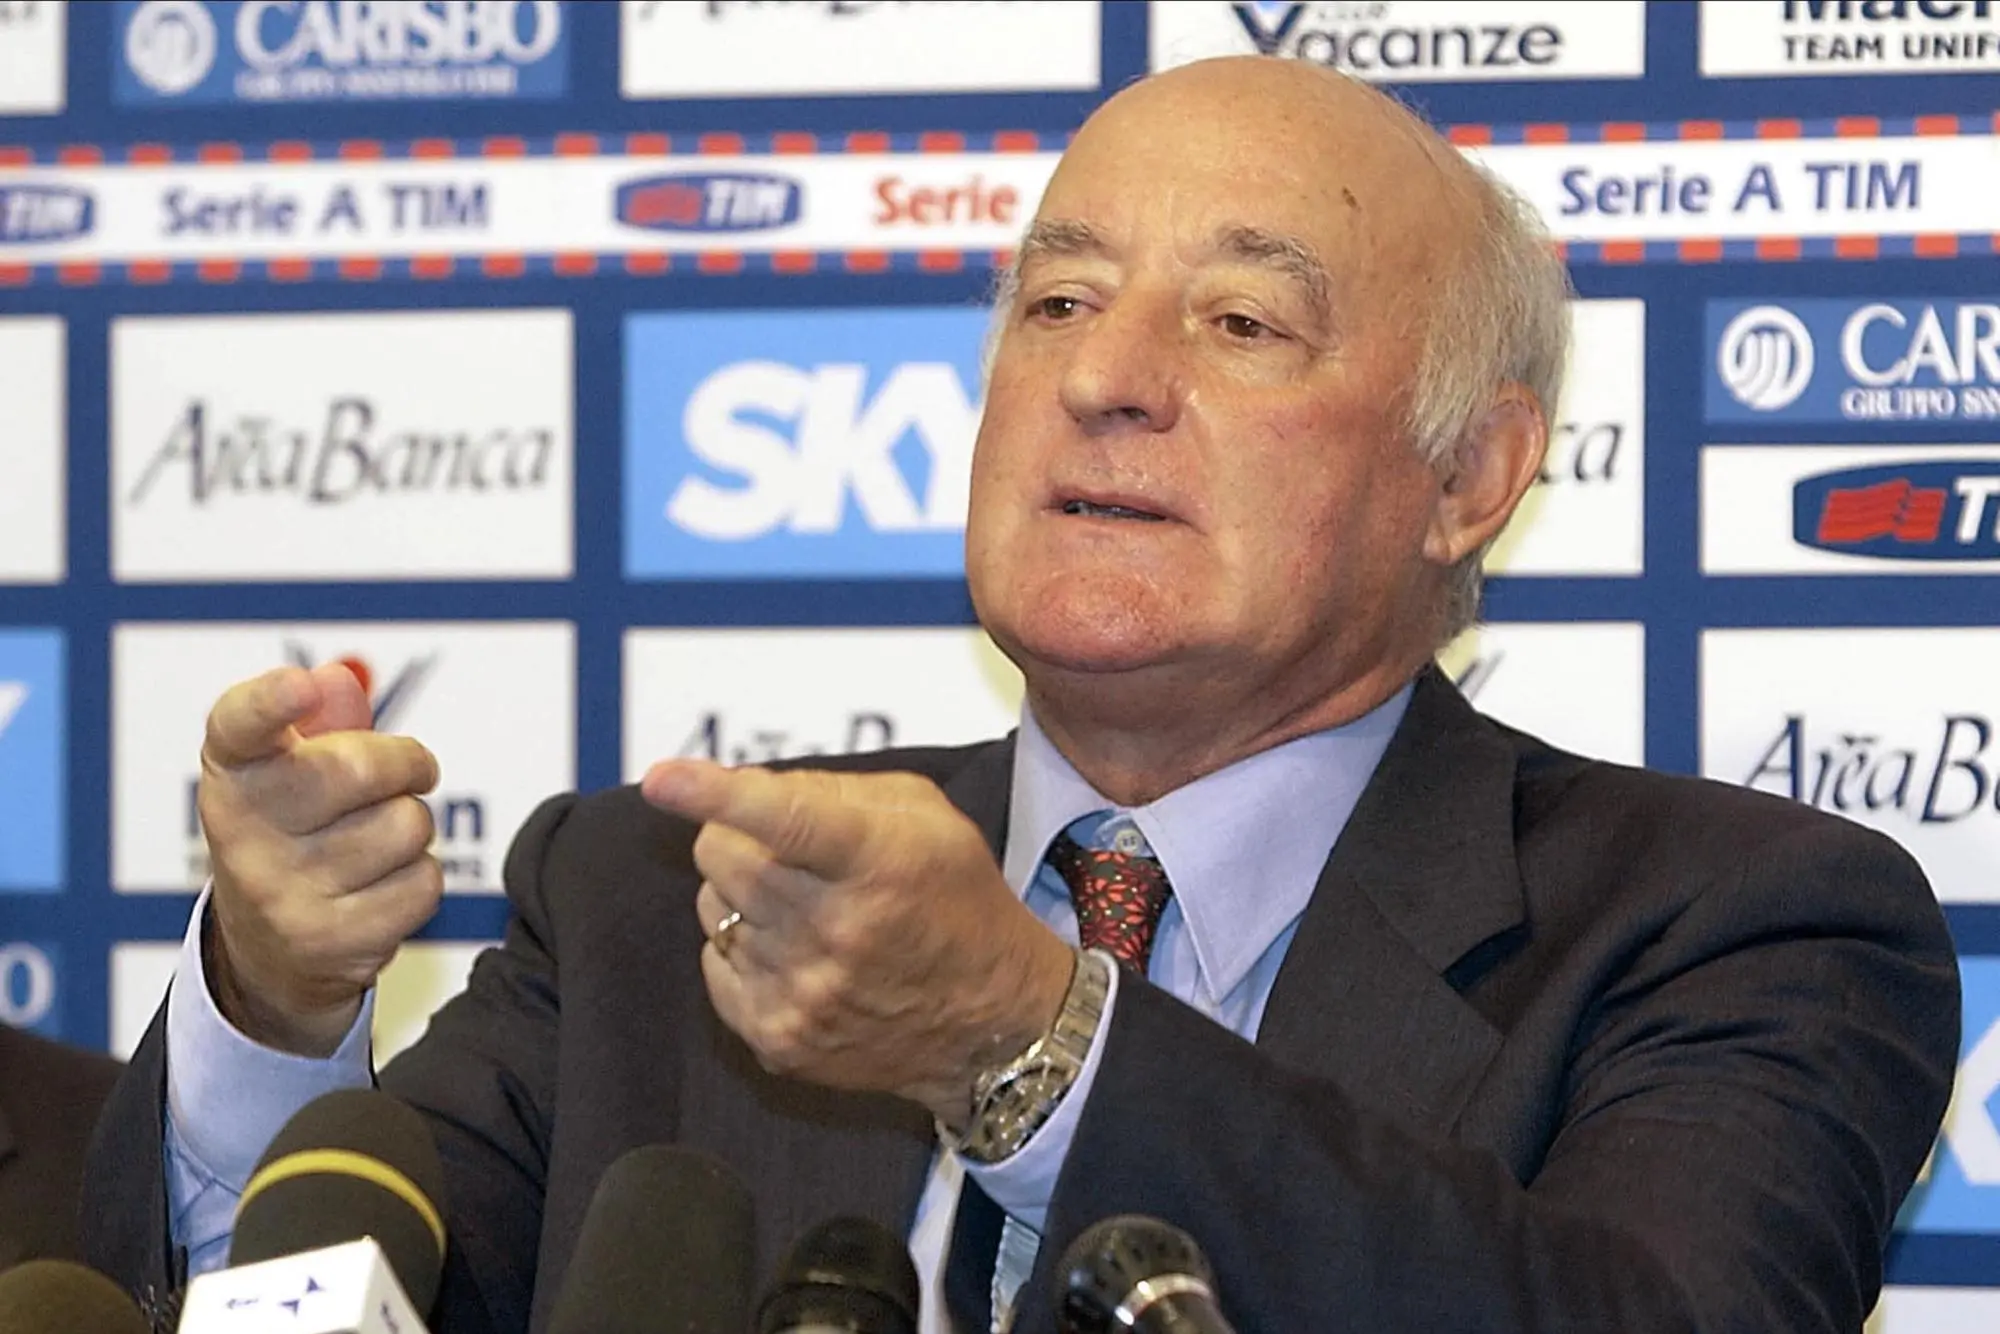 Carlo Mazzone durante una conferenza stampa, in una immagine del 28 agosto 2003 (foto Ansa)